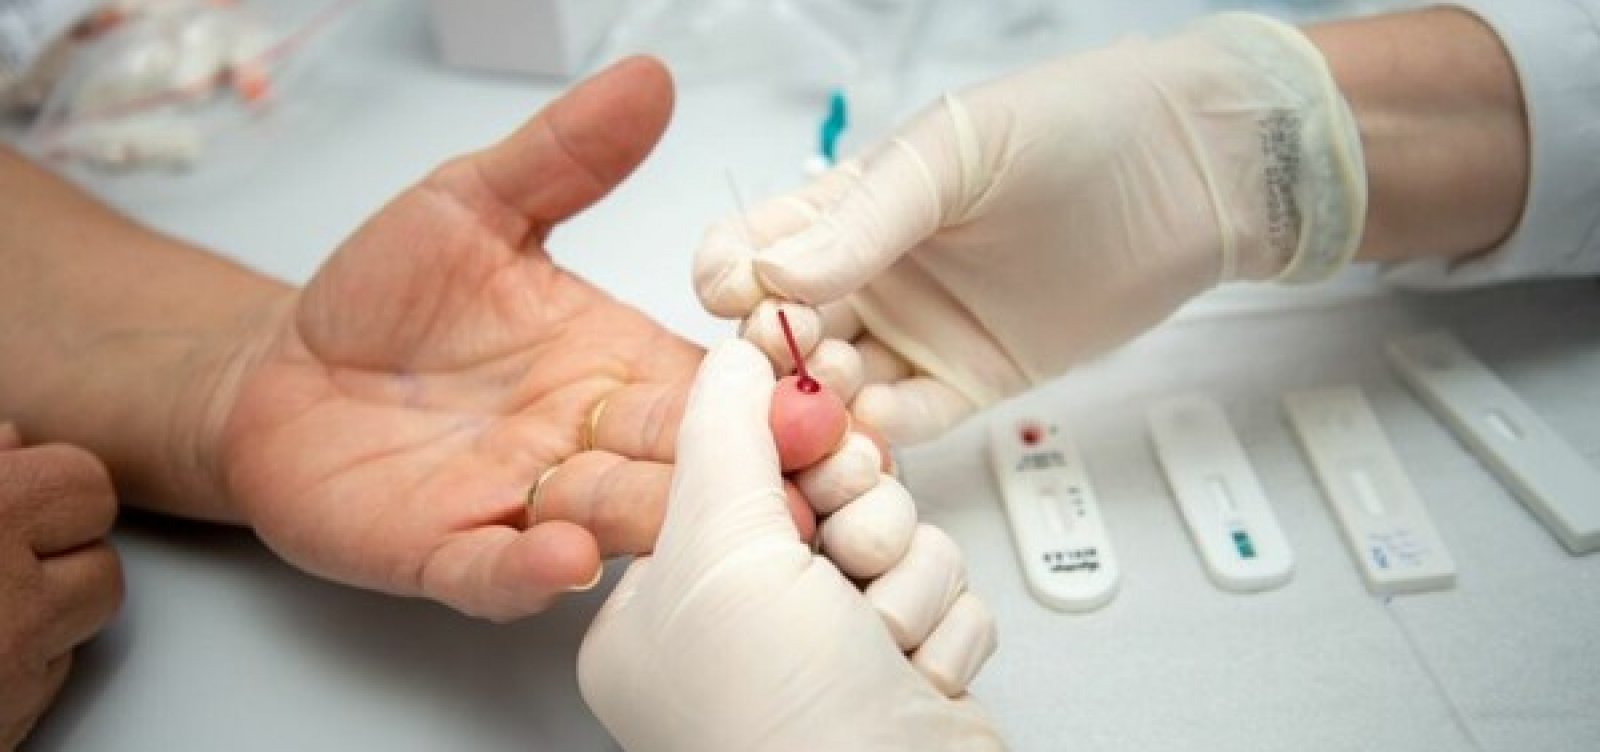 Casos detectados de HIV no Brasil caíram 25% em 2020 